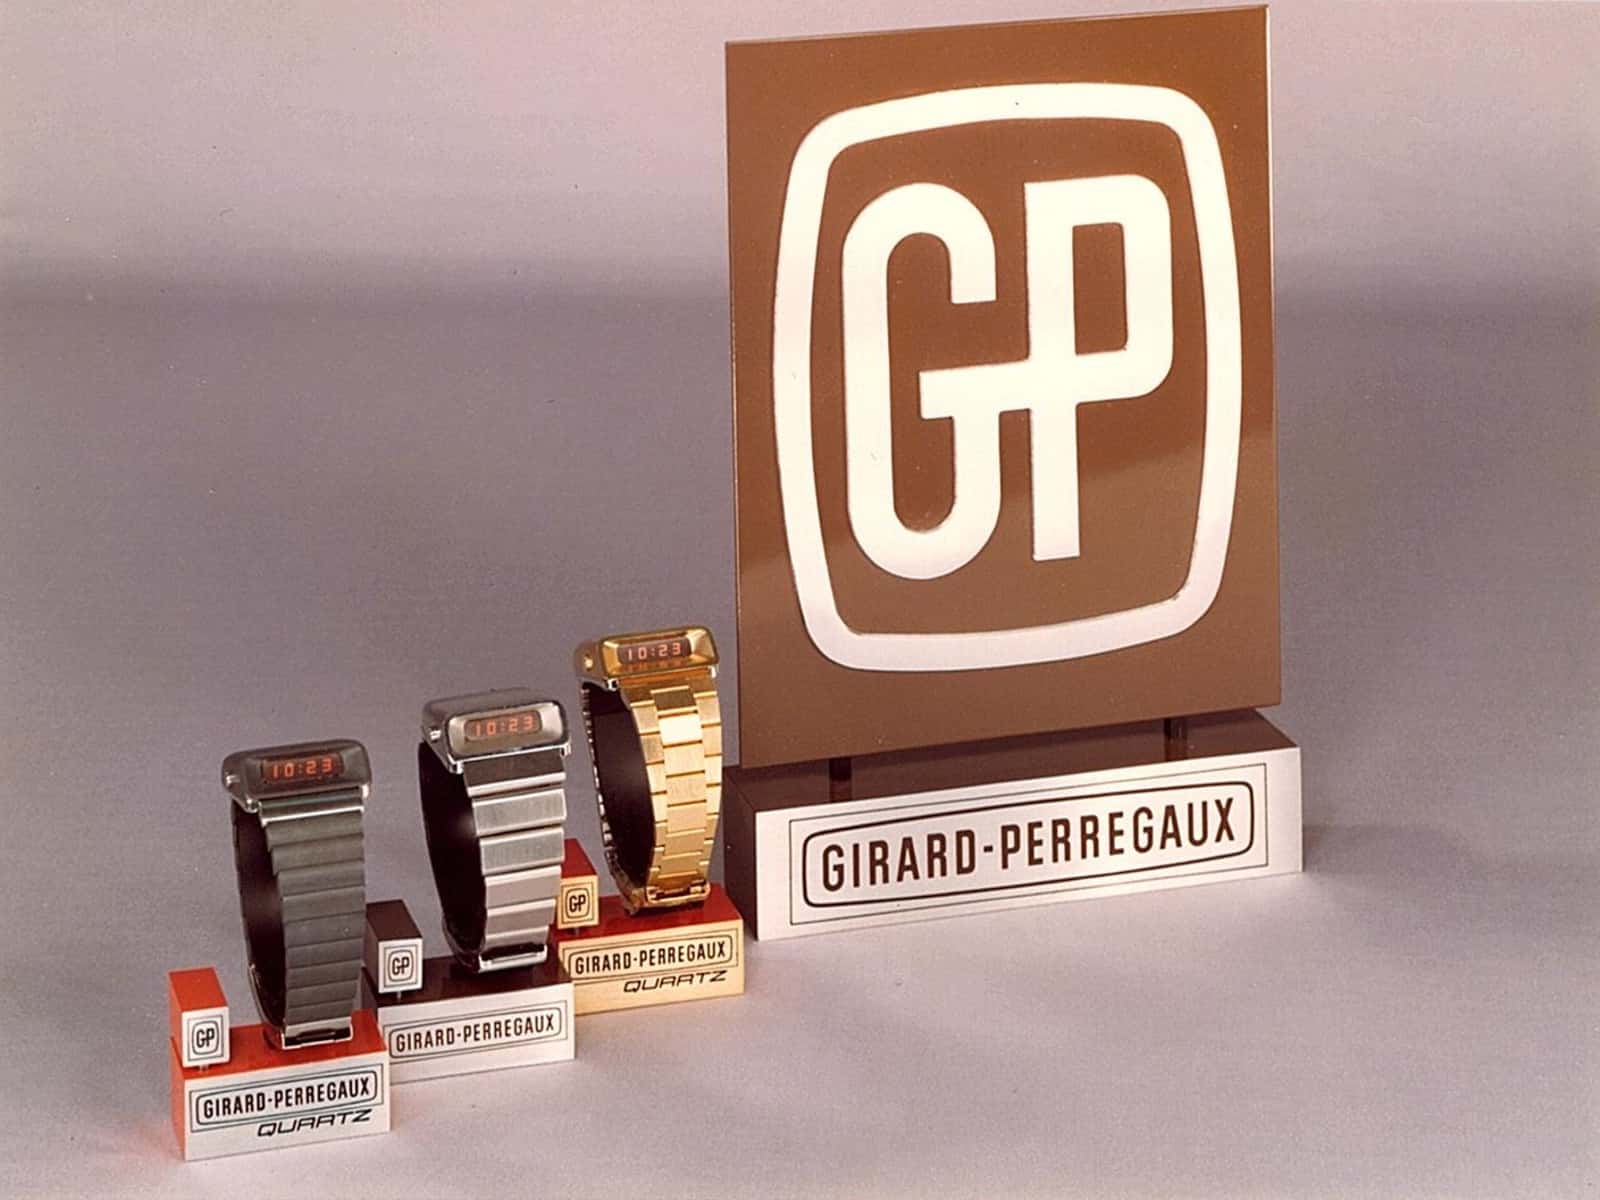 Girard-Perrrgaux-Casquette-Juni-1975.jpg